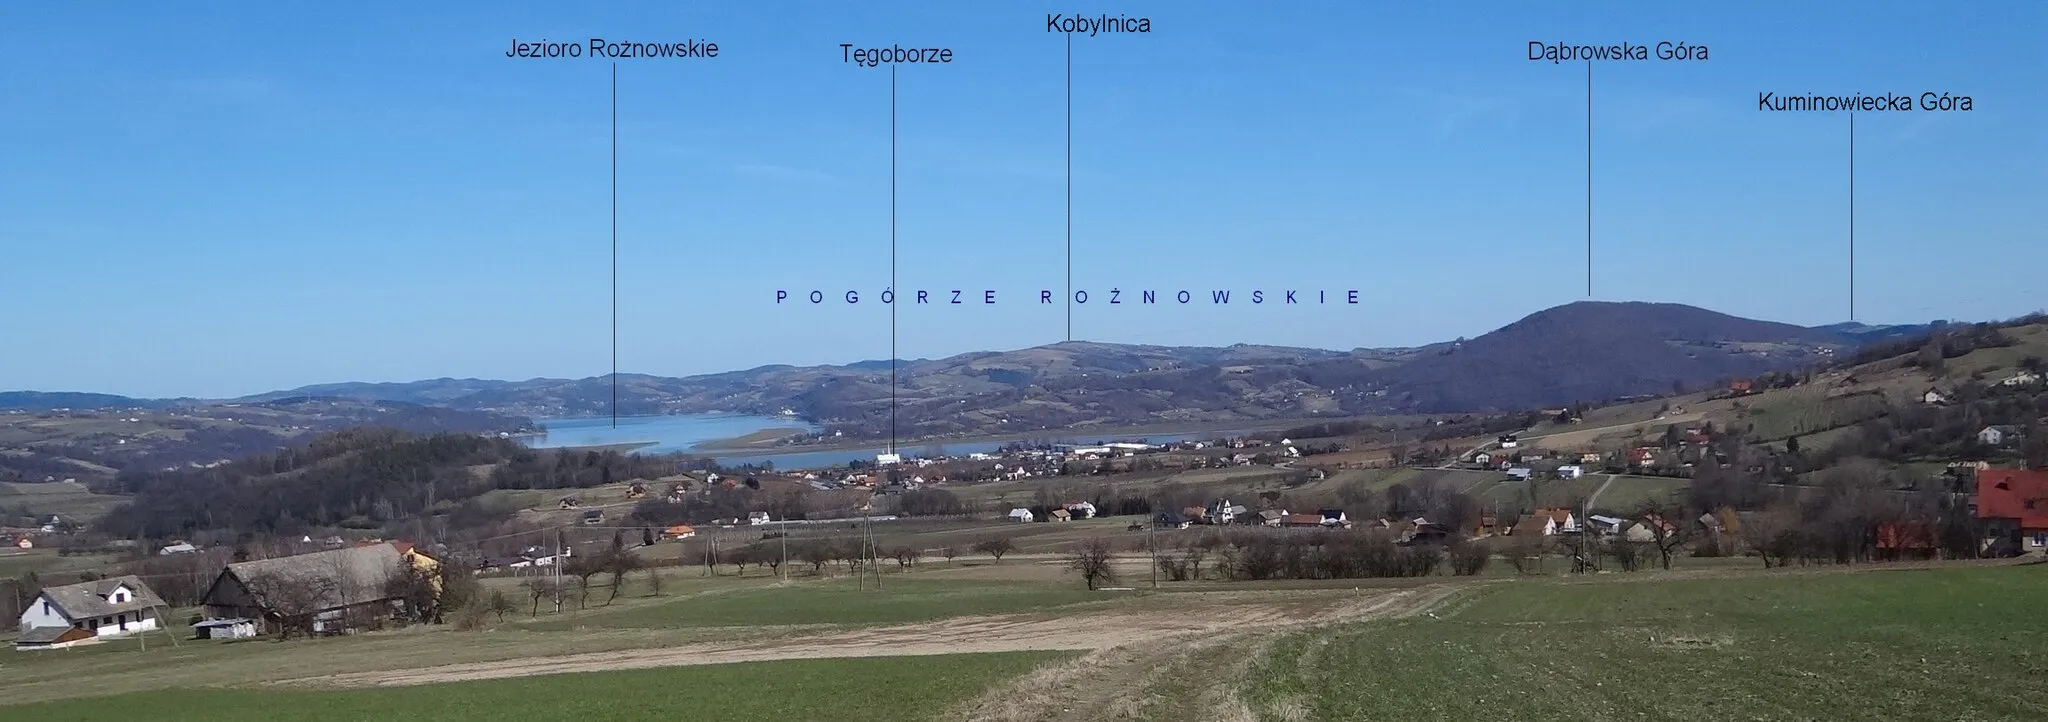 Photo showing: Widok na Jezioro Rożnowskie i Pogórze Rożnowskie